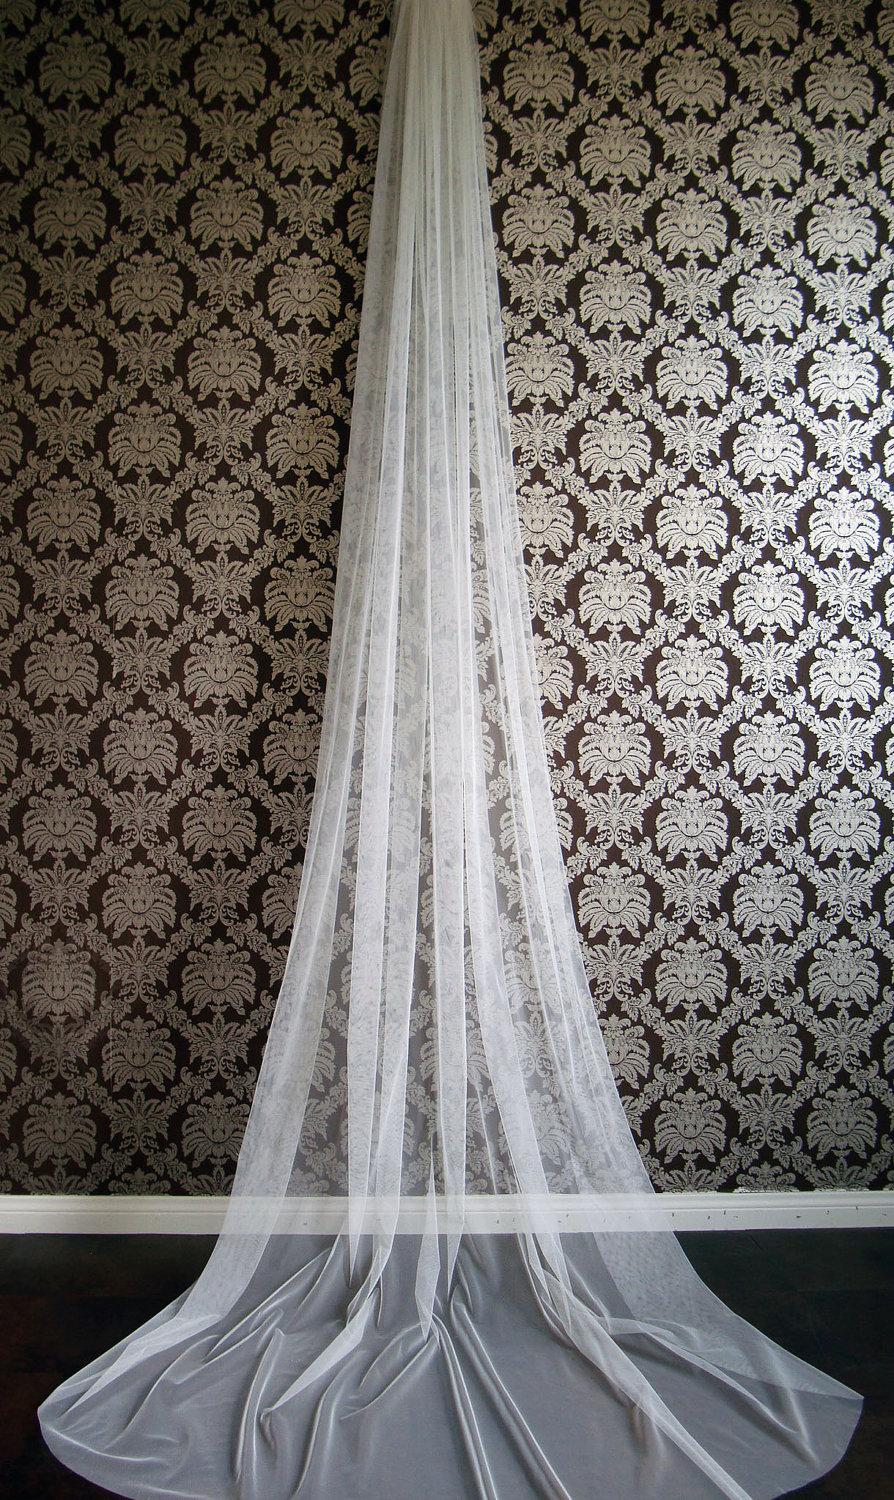 زفاف - Modern Couture Soft Bridal Veil Chapel Cathedral Fingertip Length by IHeartBride V-1T Evangelina Italian Tulle Drape Veil Ivory,Blush,White